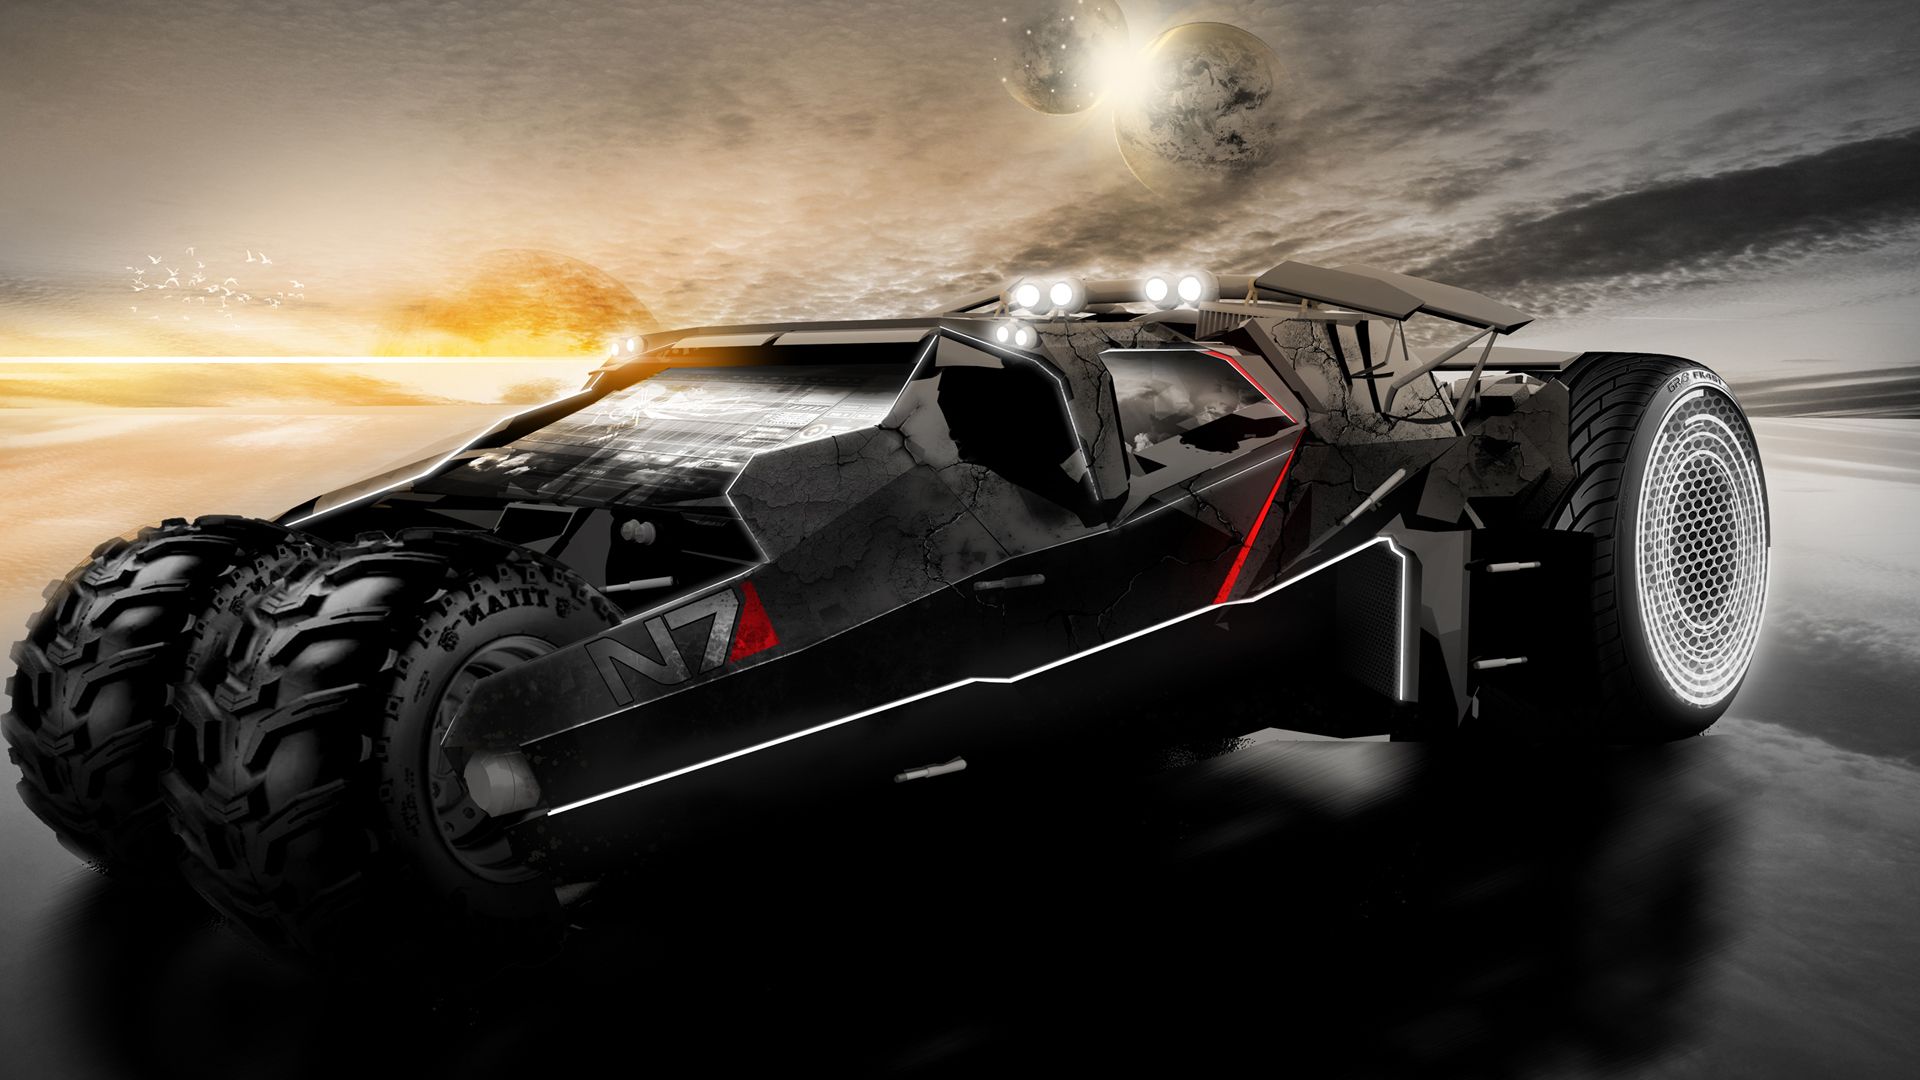 Mass Effect Sci Fi Vehicles Wallpaperx1080